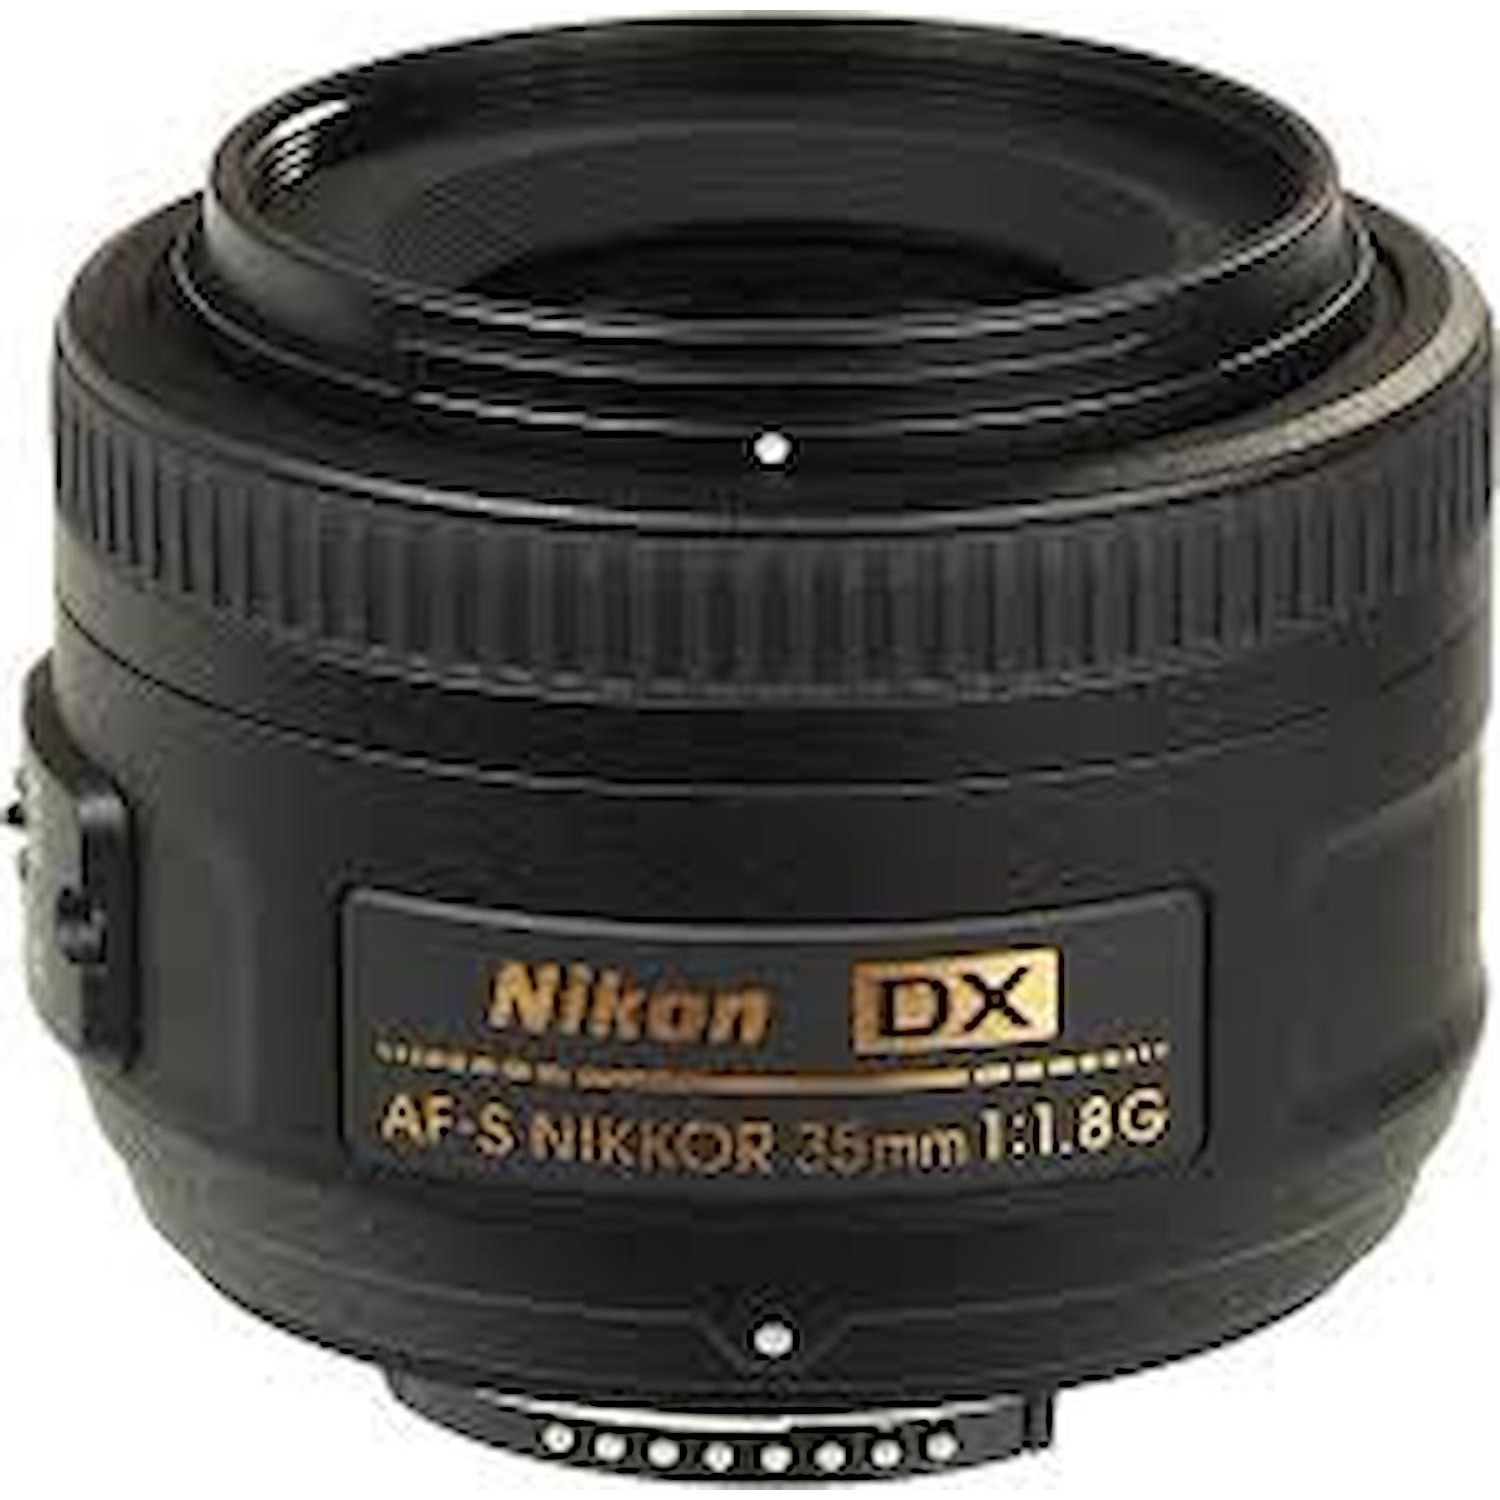 Immagine per Obiettivo Nikon 35mm F/1.8G AF-S DX da DIMOStore